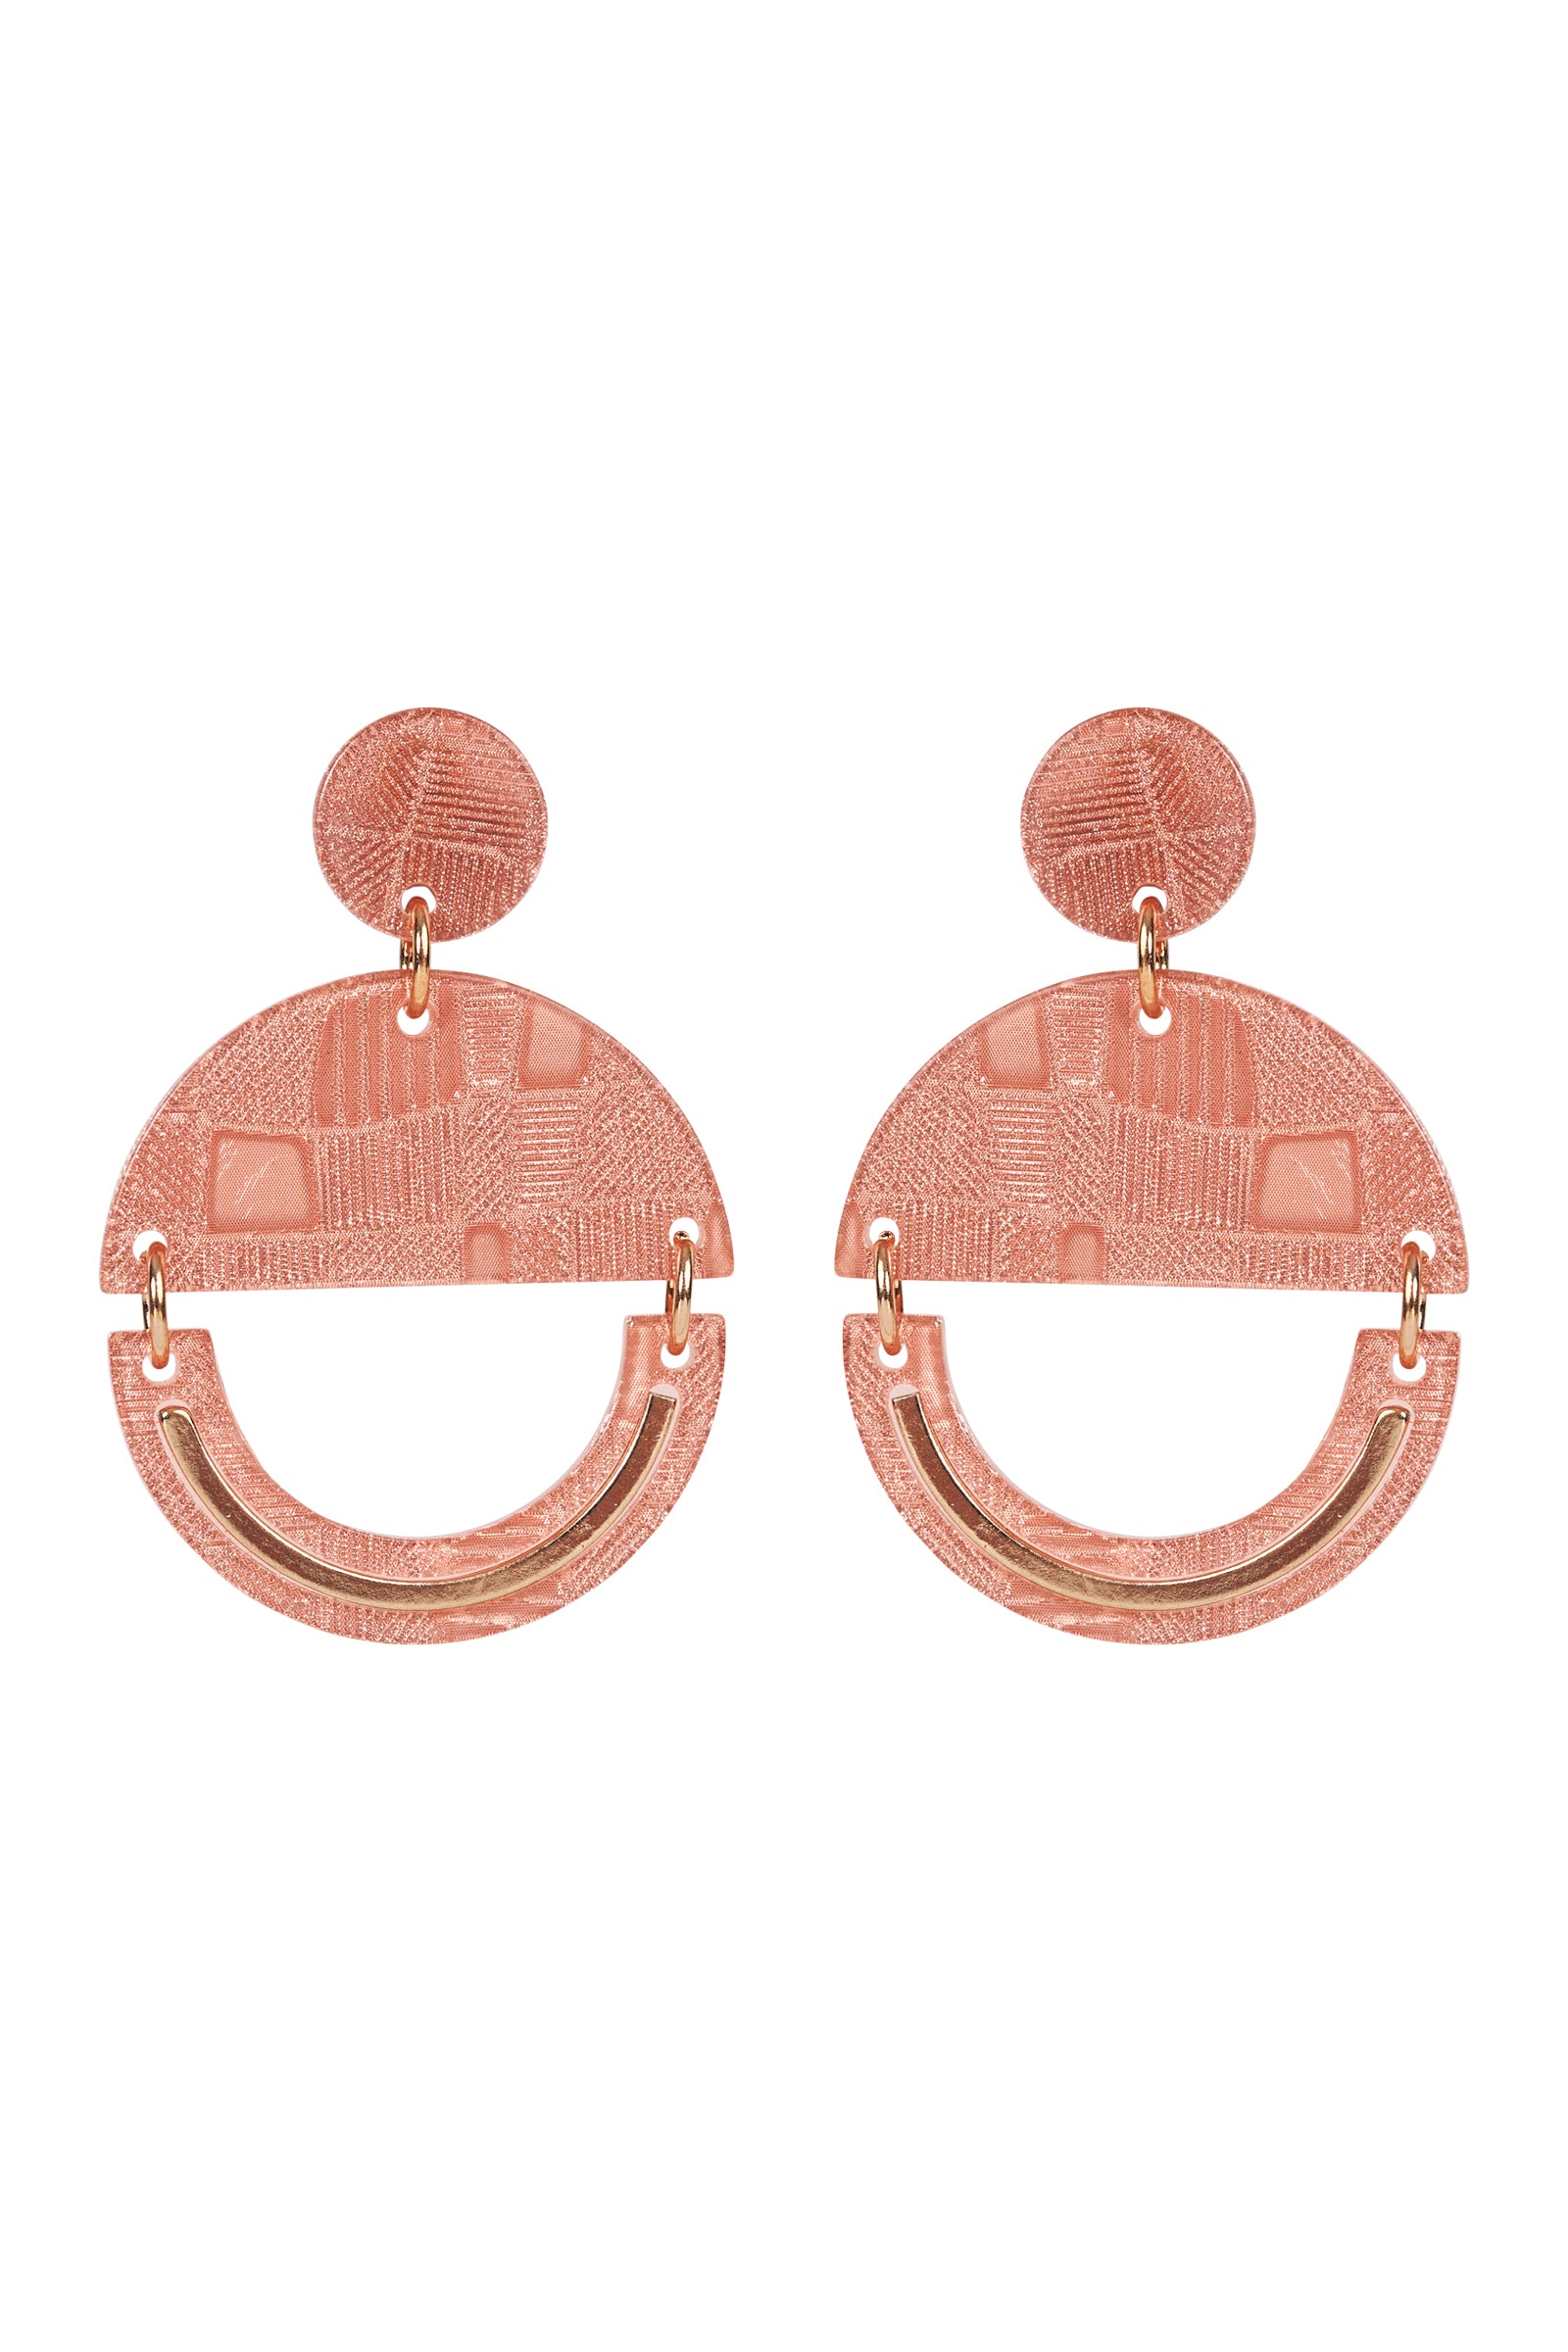 Bantu Dome Earring - Amber - eb&ive Earring